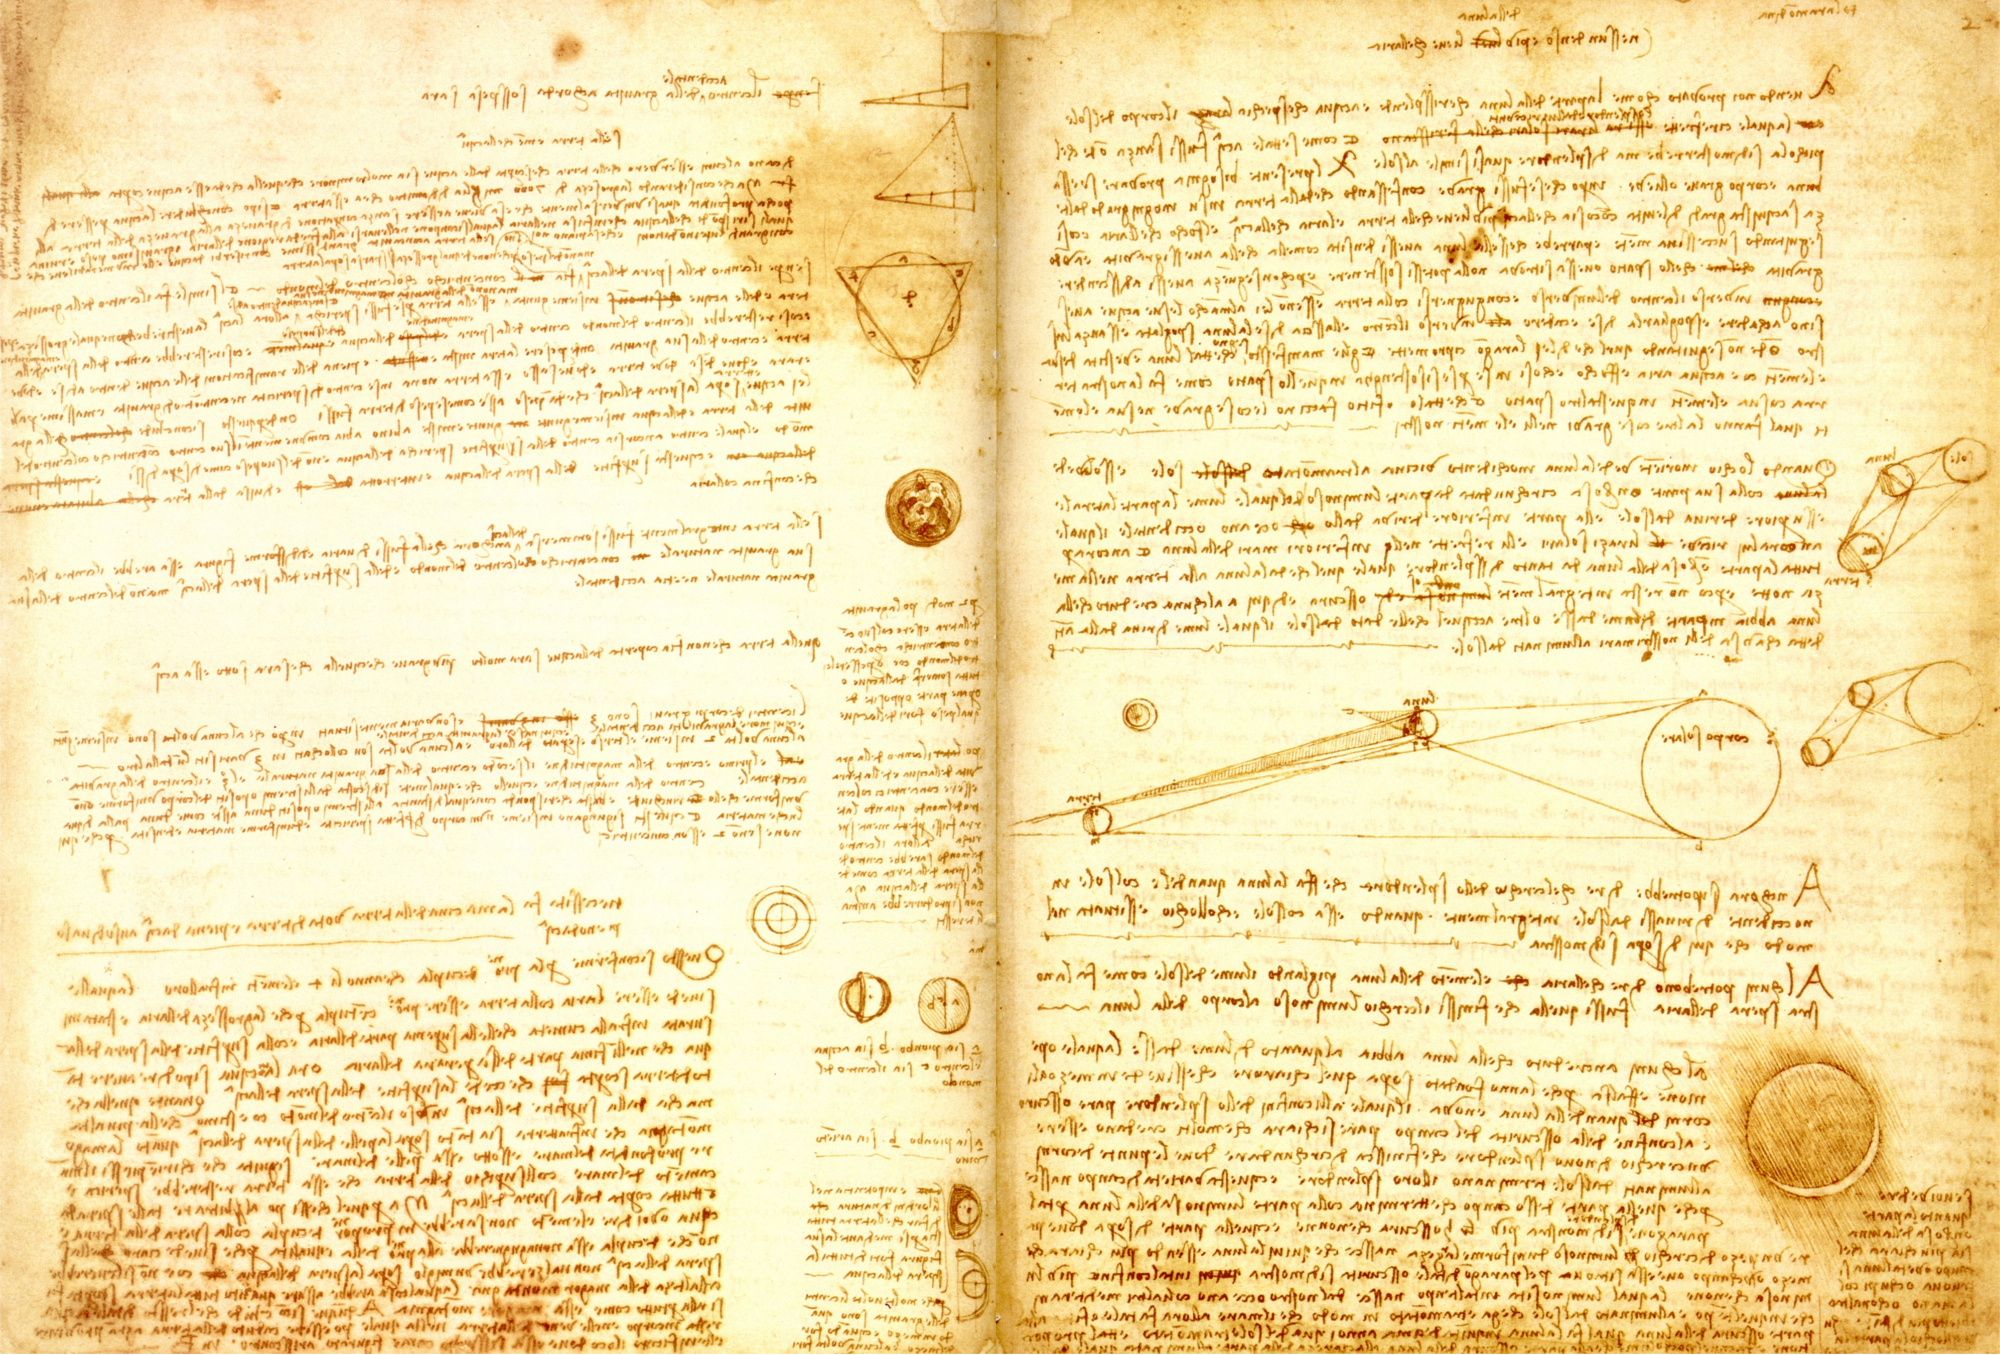 da Vinci's notebook